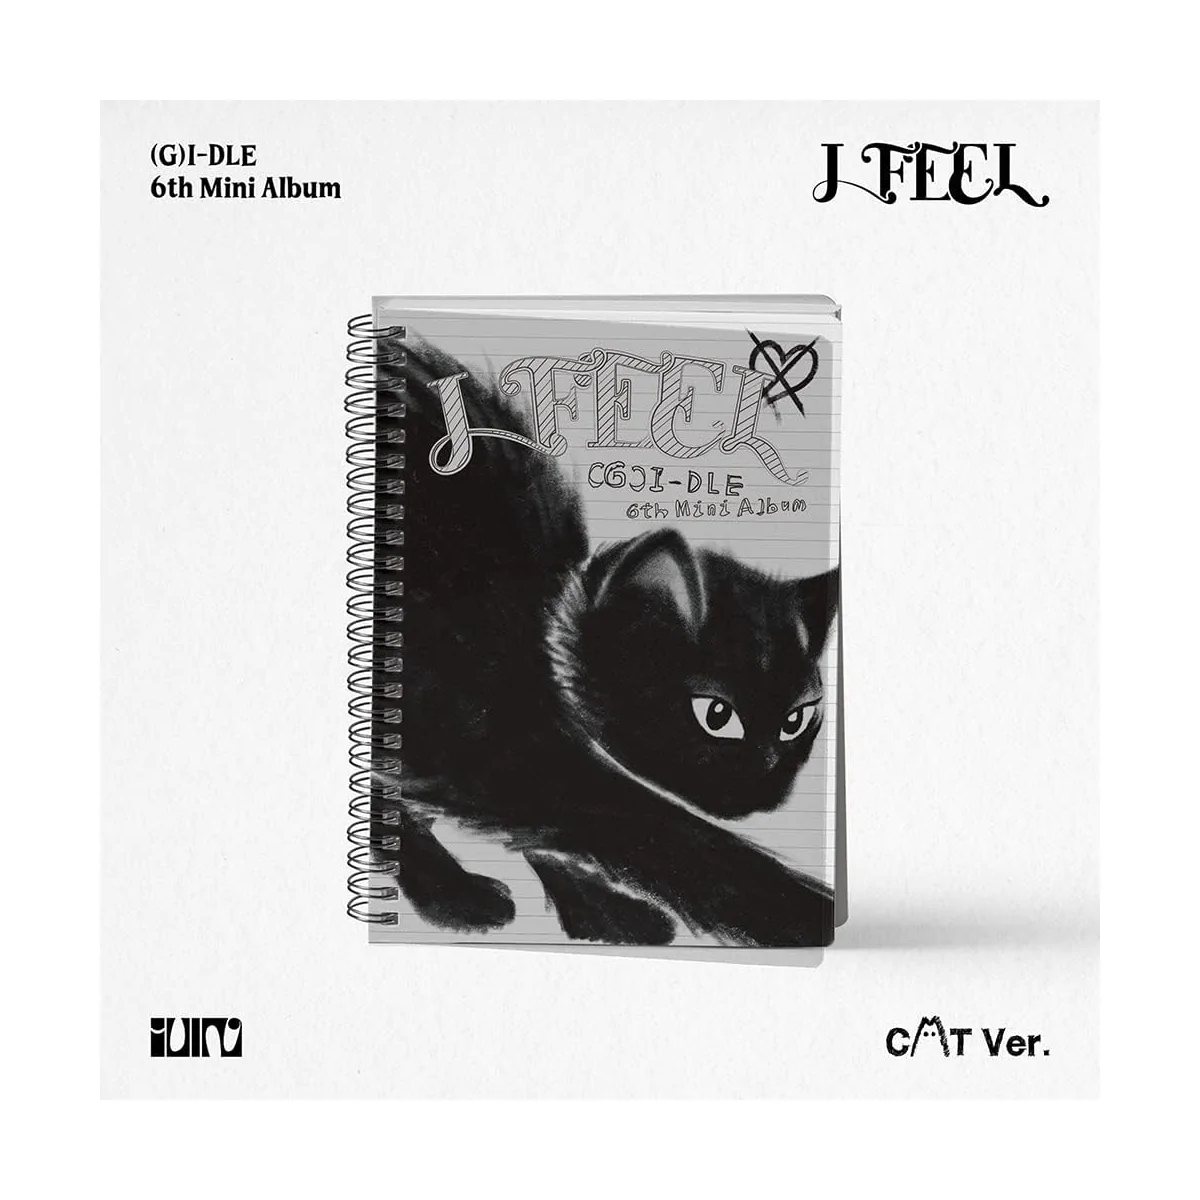 (G)I-DLE - I feel (CAT Version) (6th Mini Album) 